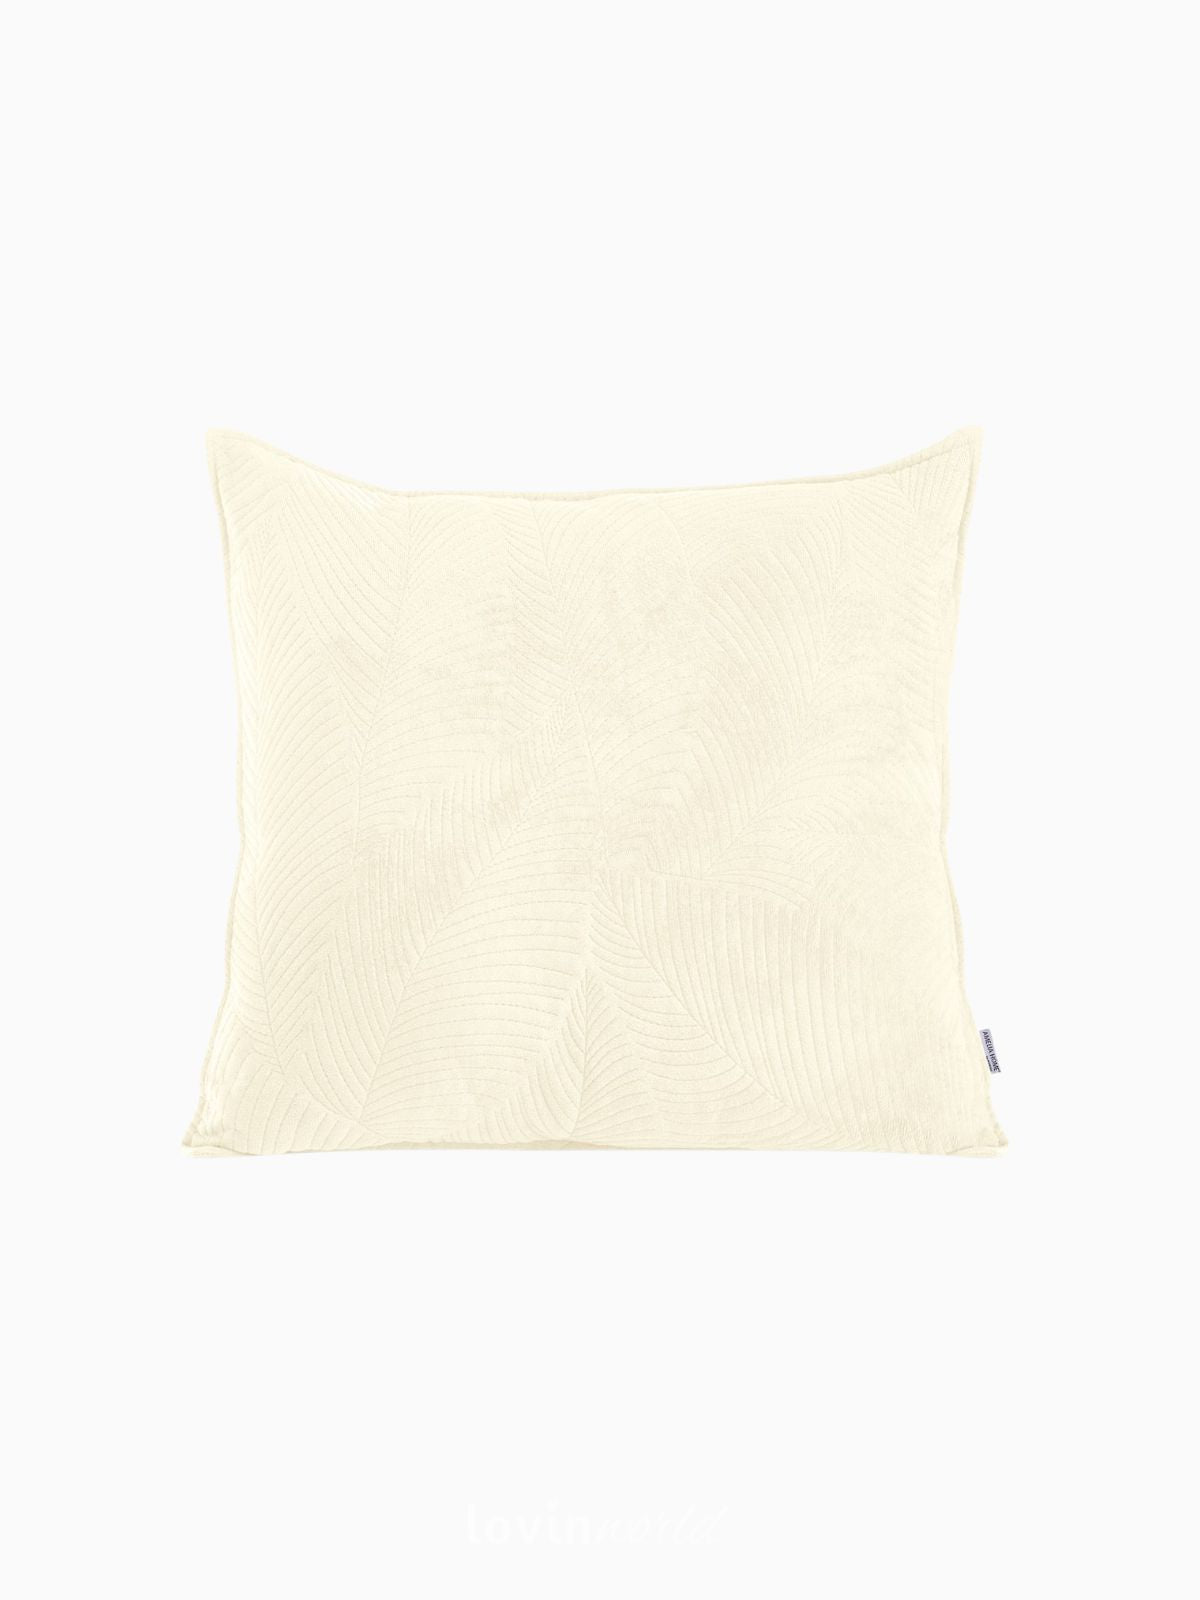 Cuscino decorativo in velluto Palsha, colore beige chiaro 45x45 cm.-4